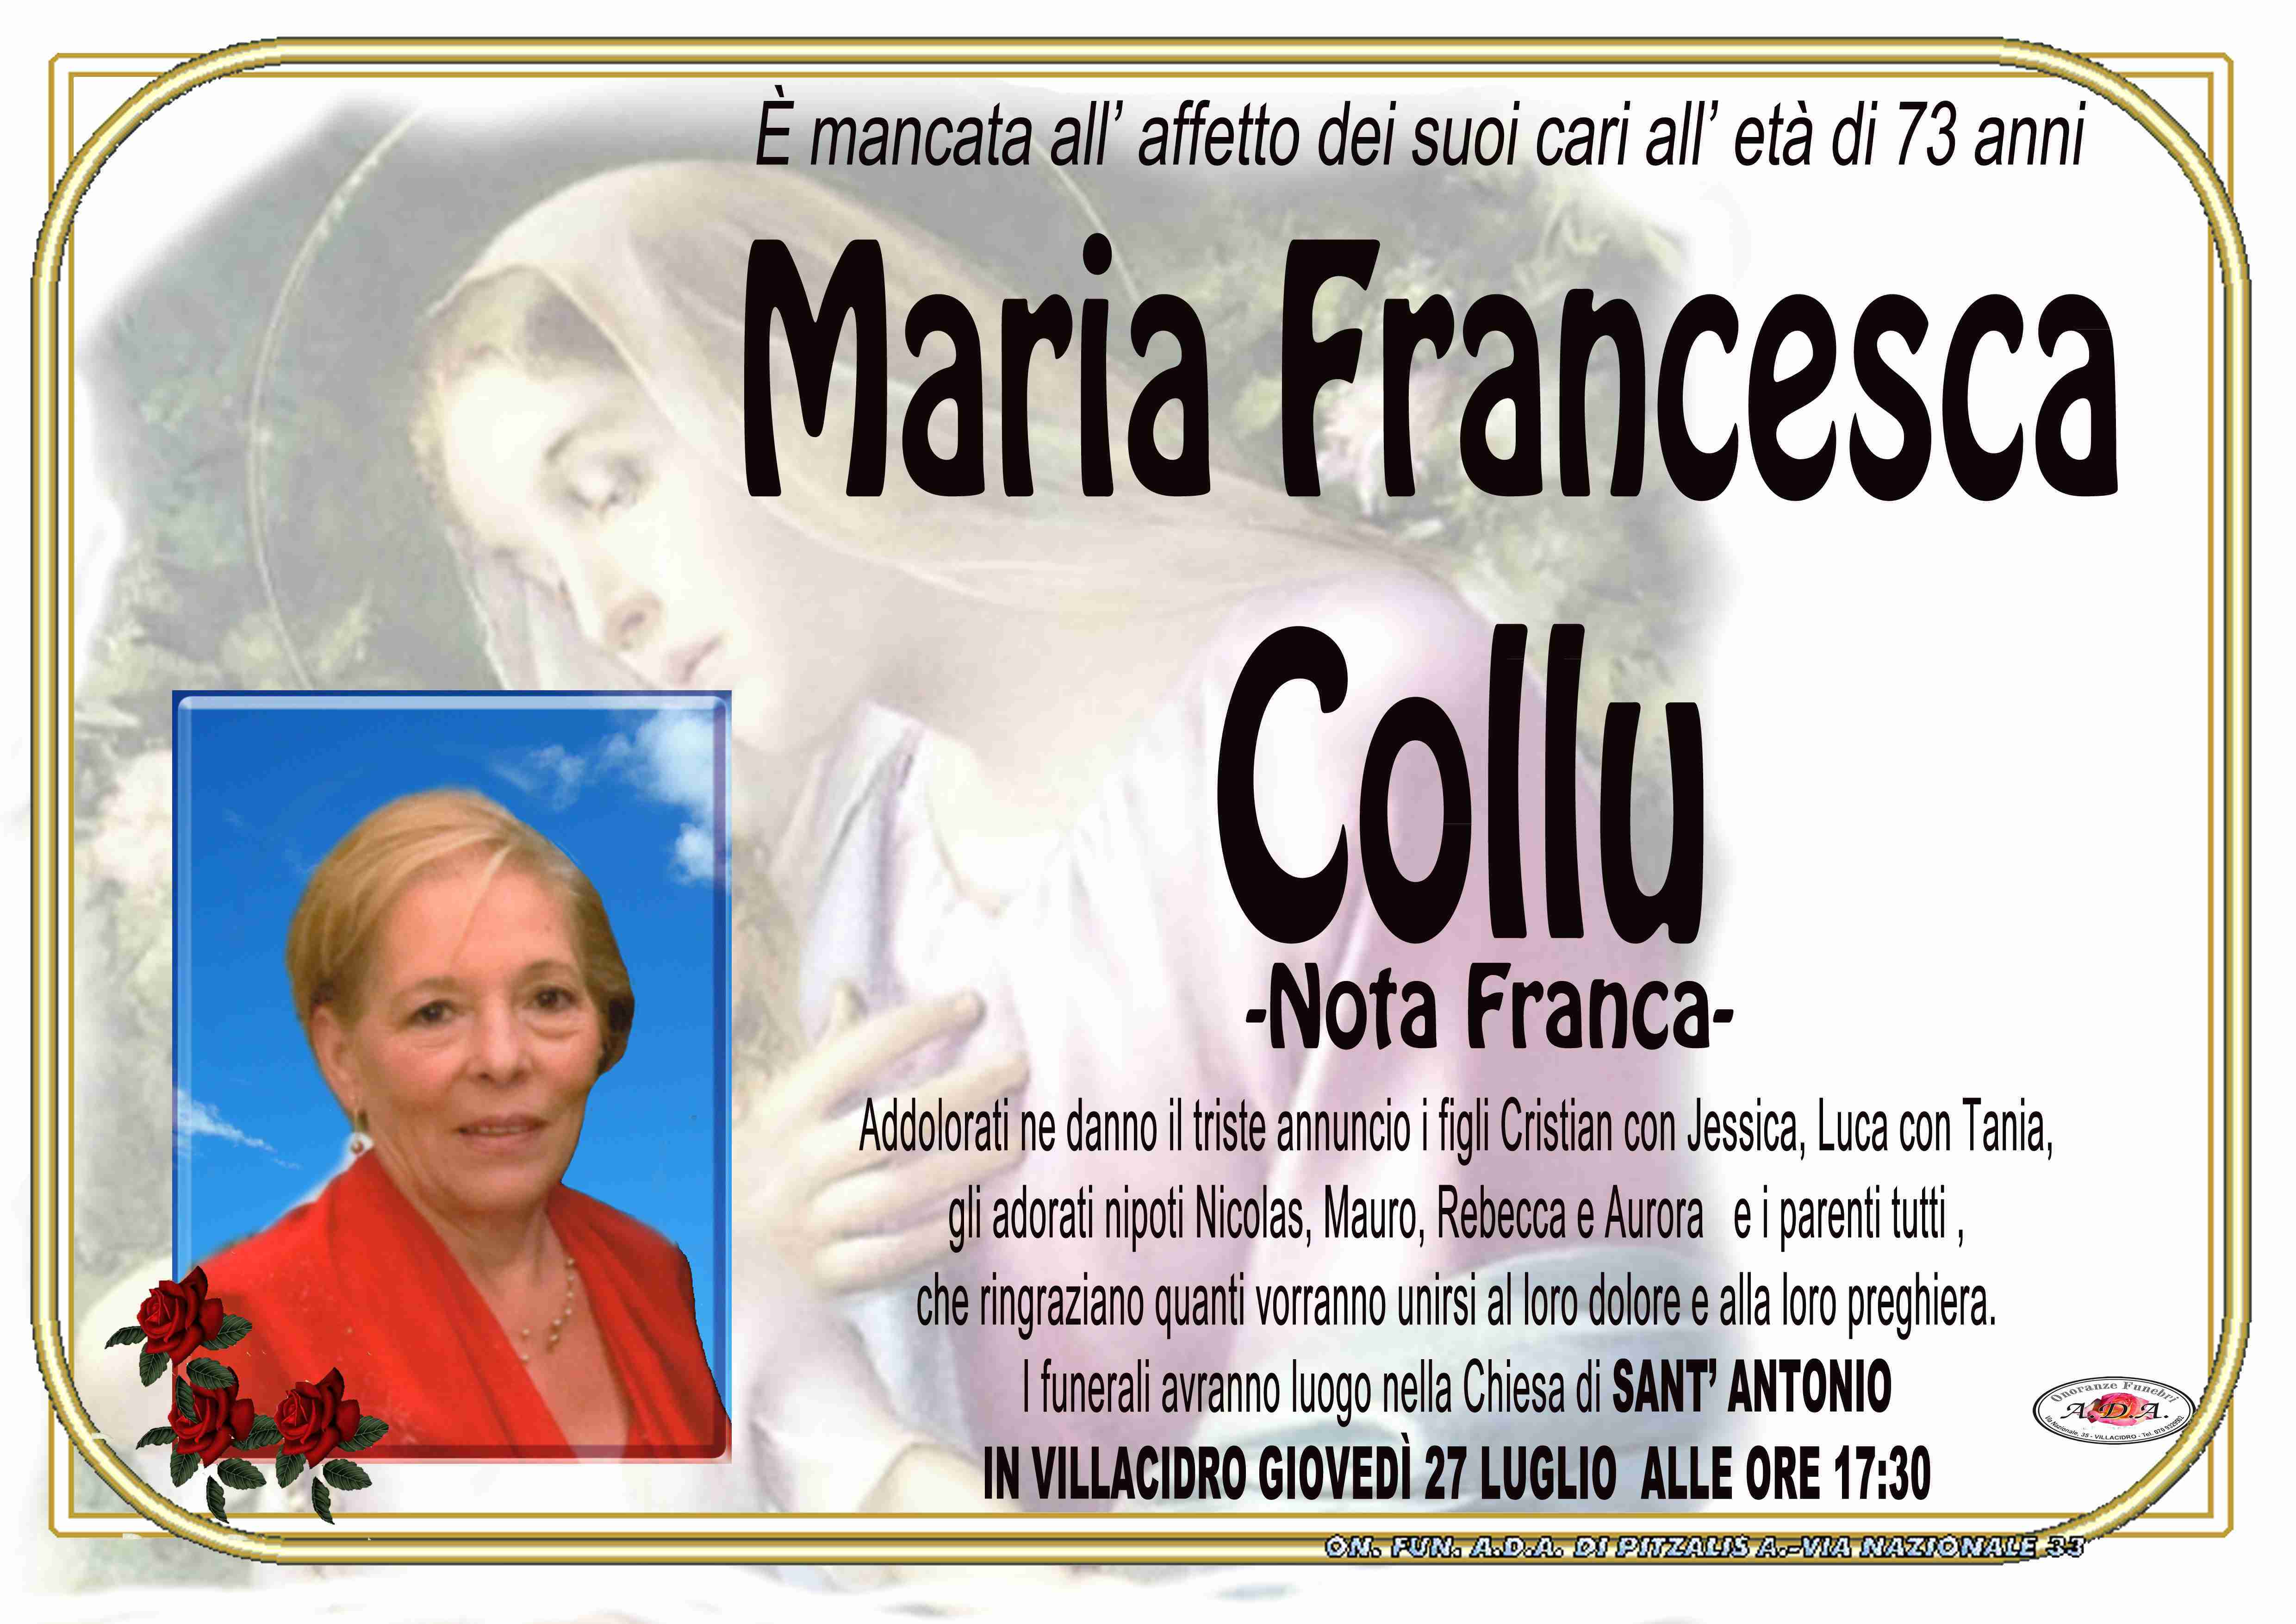 Maria Francesca Collu